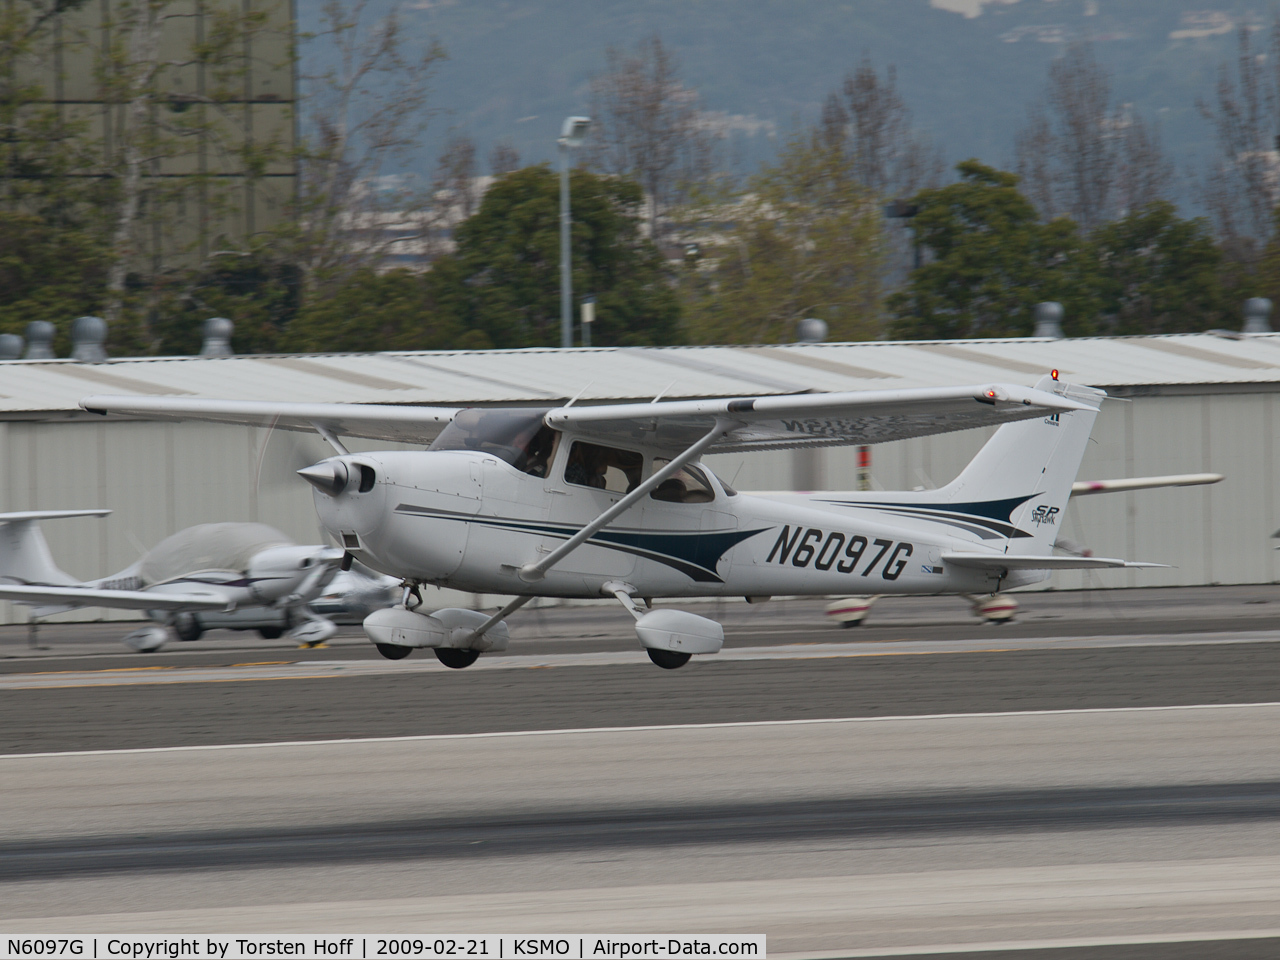 N6097G, 2004 Cessna 172S C/N 172S9673, N6097G departing from RWY 21